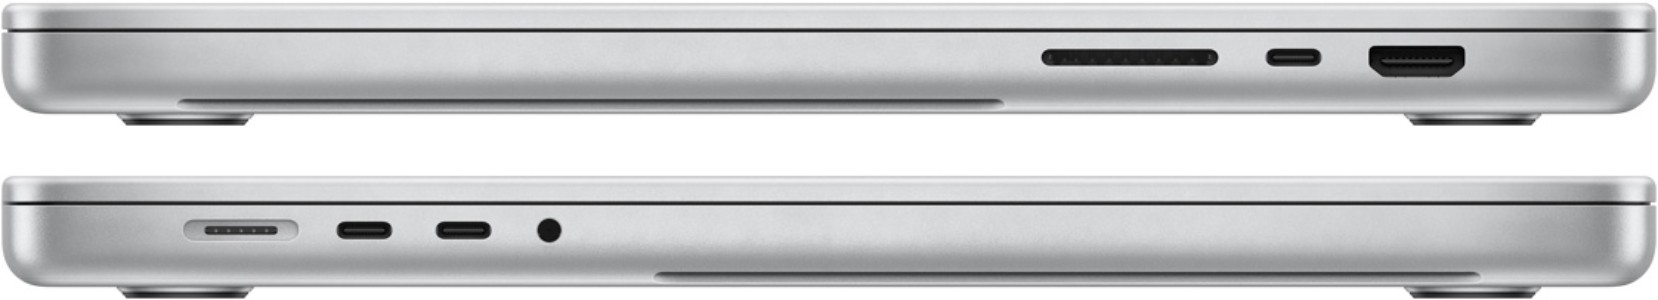 APPLE MacBook Pro  - MBP14-MKGR3FN